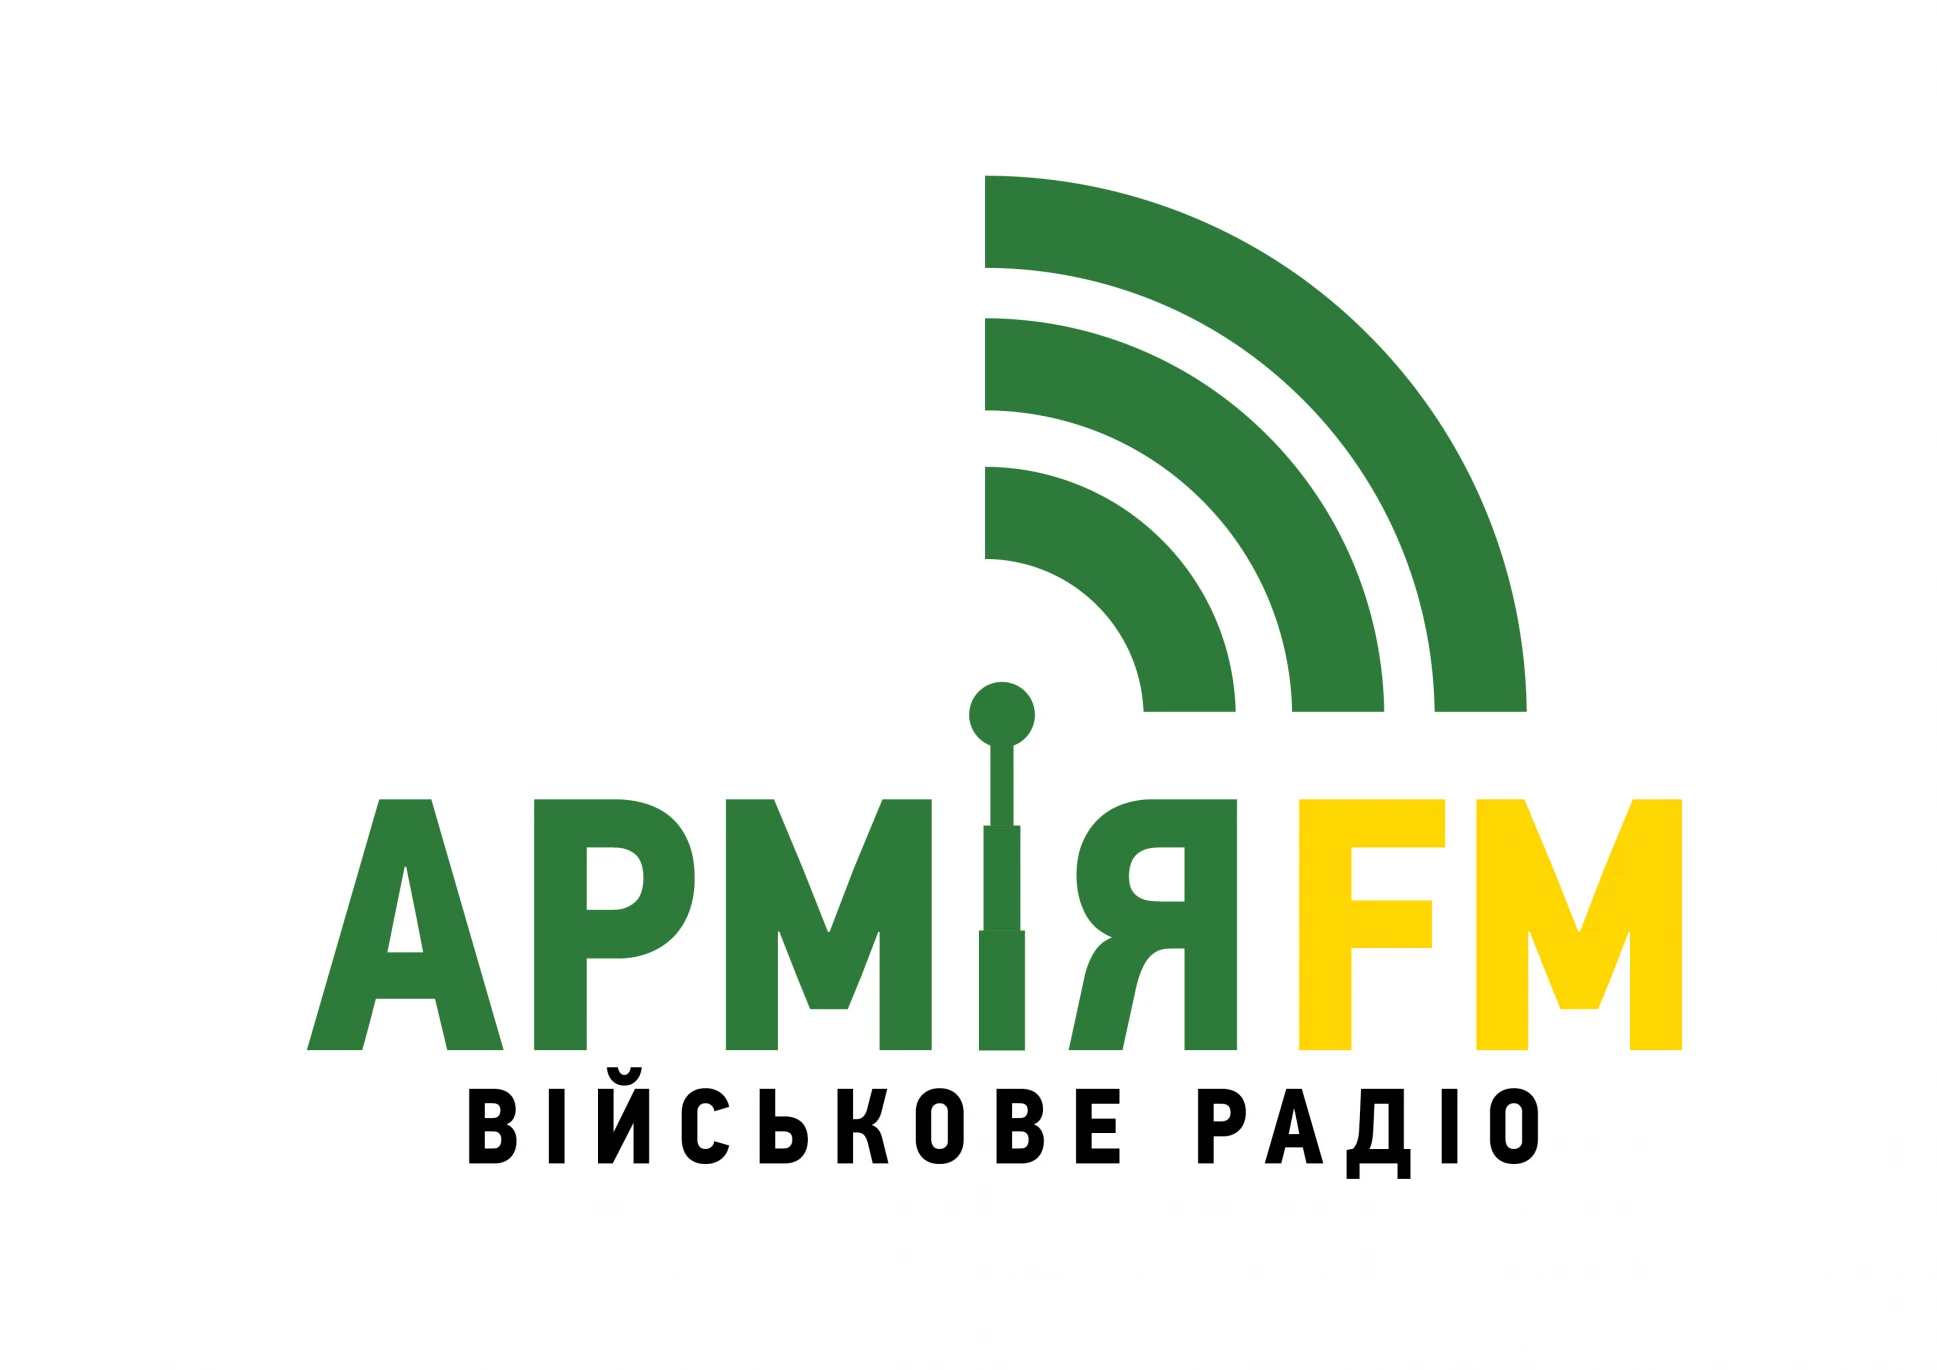 Нацрада дозволила радіостанції «Армія FM» мовити на частотах у восьми містах